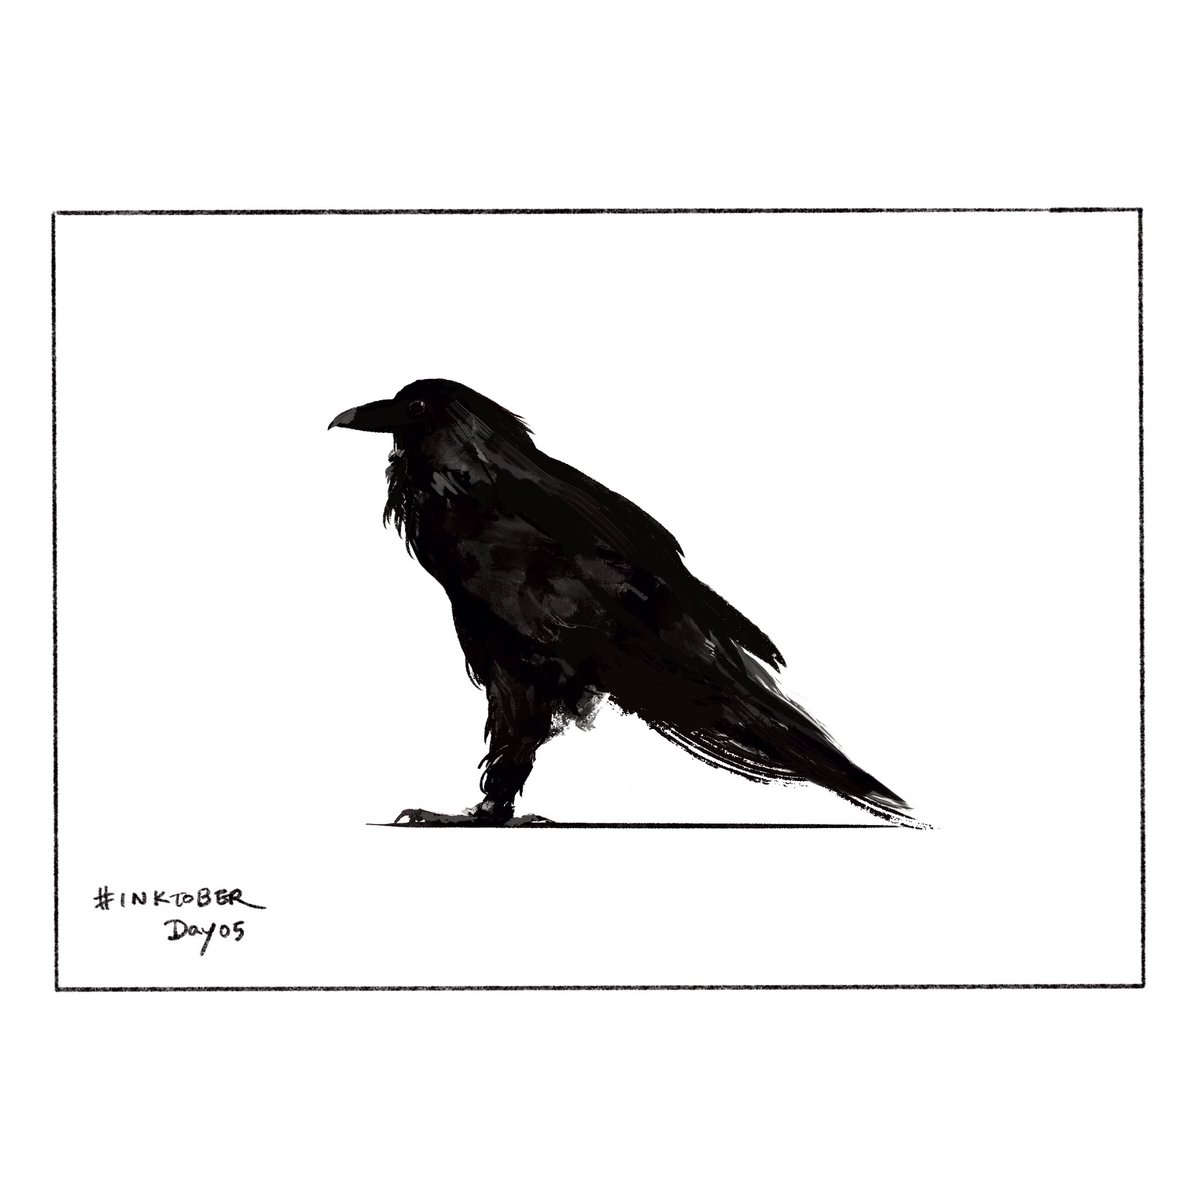 Inktober Day5. Raven

RavenとCrowの違いをめちゃくちゃ調べてしまった。勉強になった。

#inktober2021 #inktober #drawing #インクトーバー 